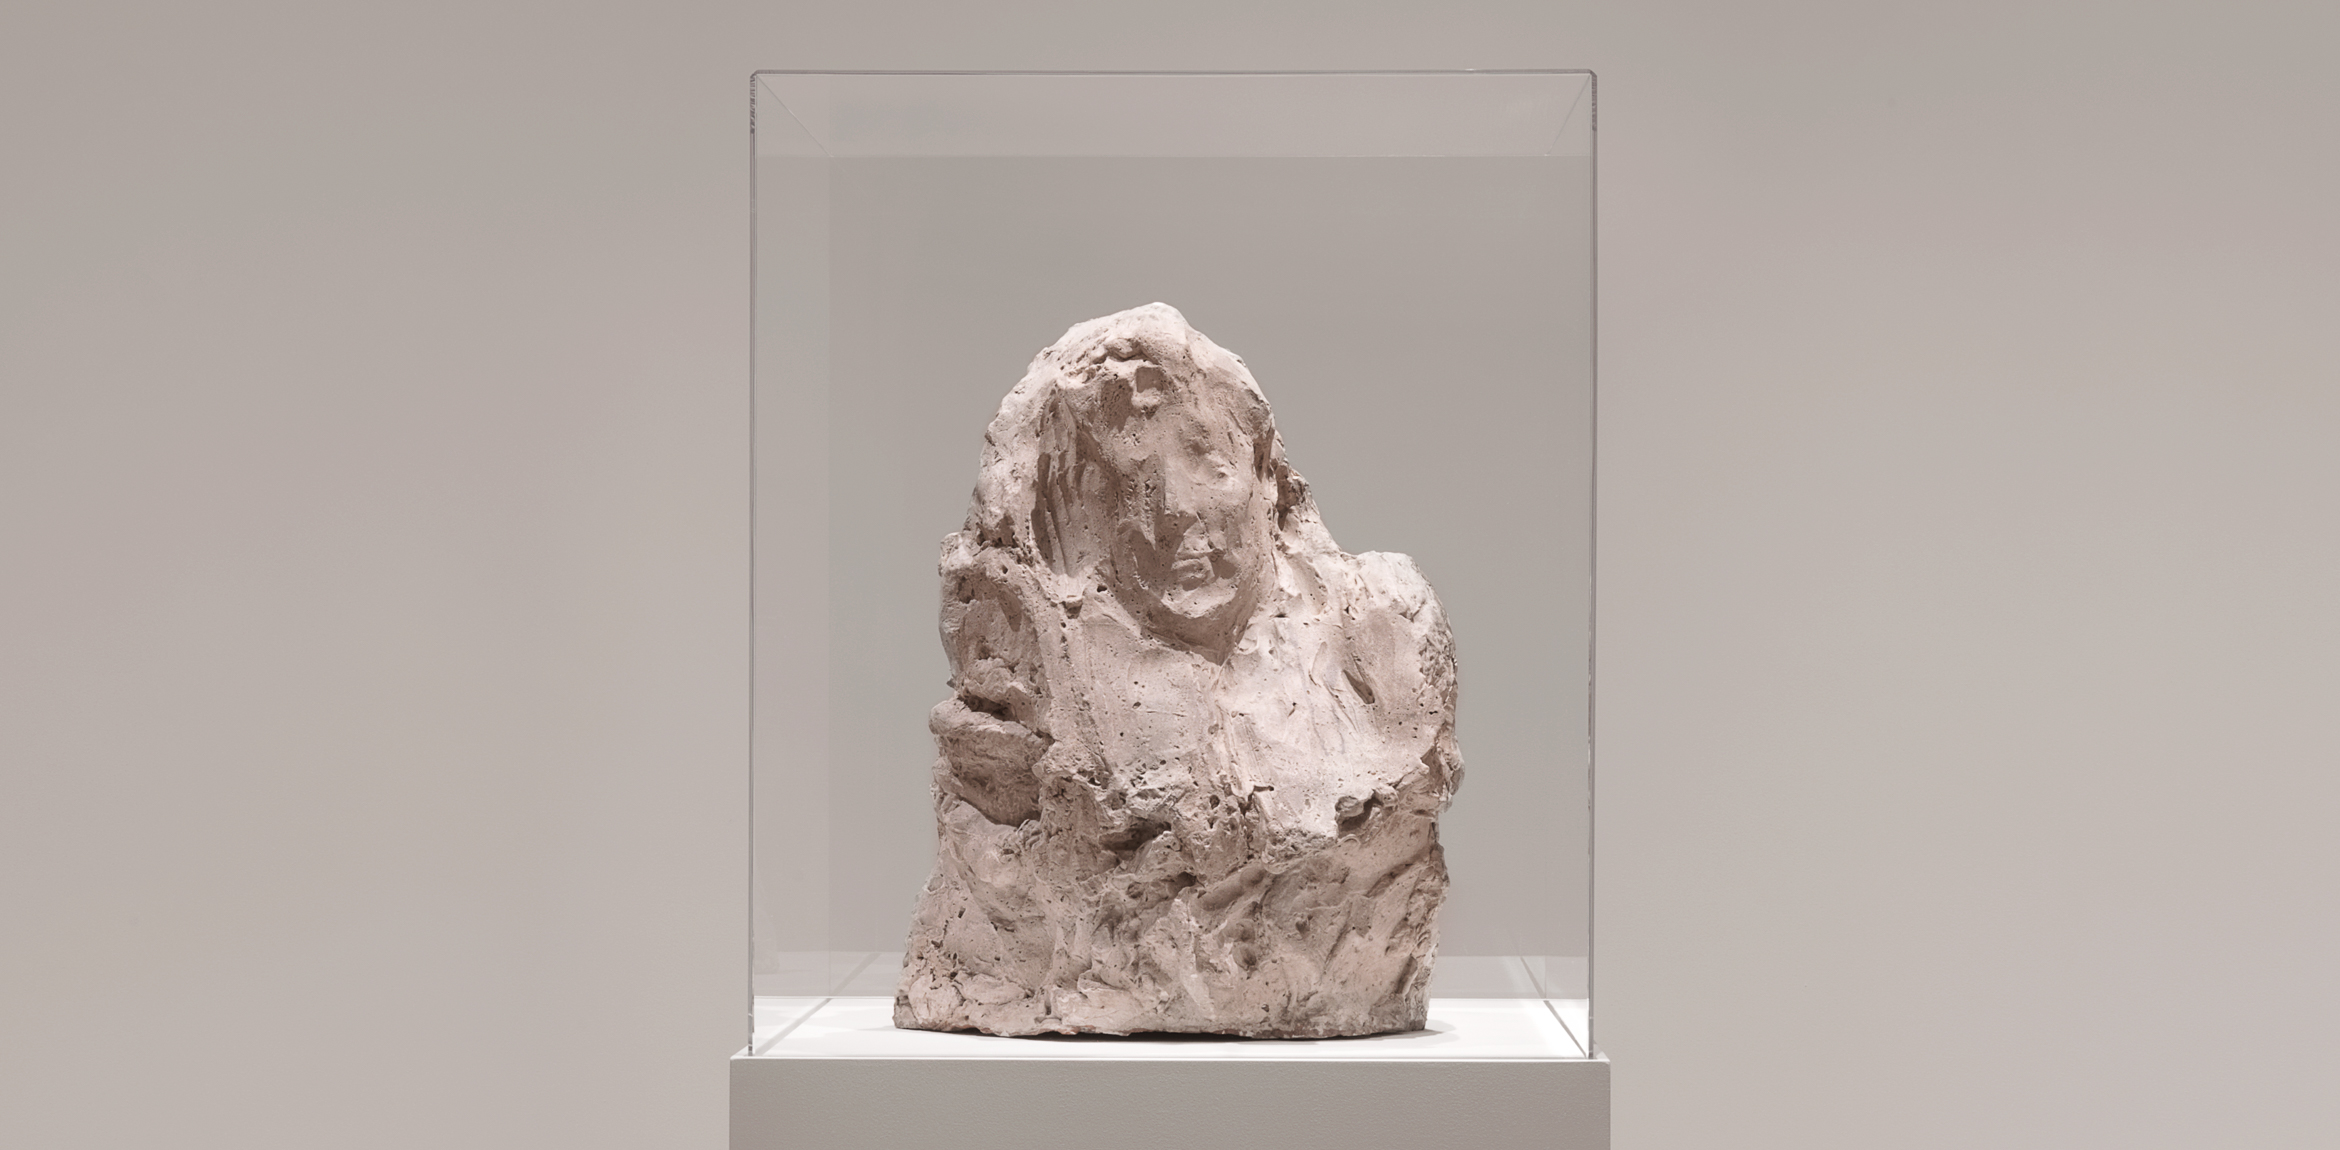 Medardo Rosso's plaster sculpture 